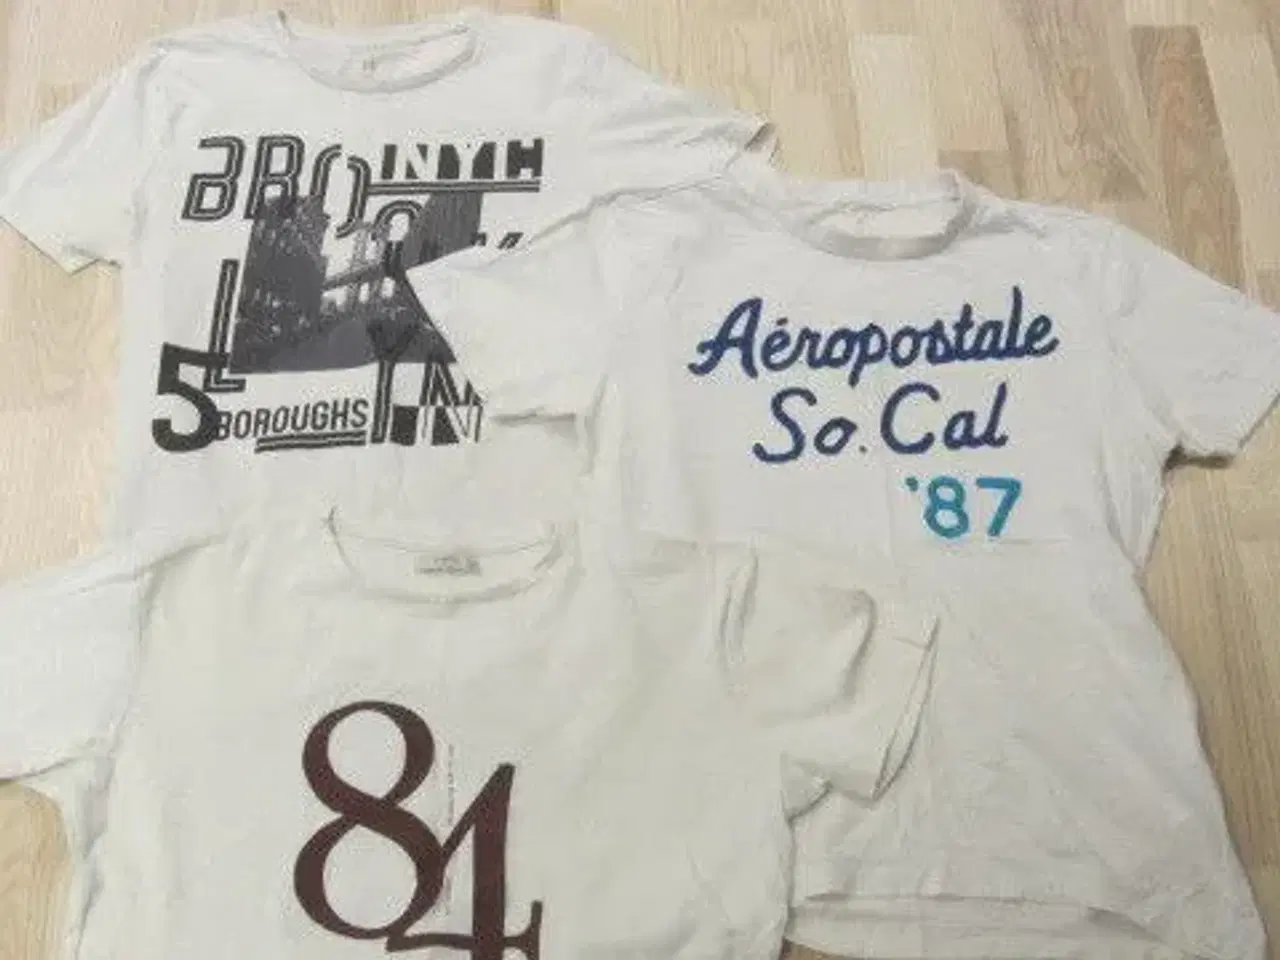 Billede 1 - Str. M, 3 t-shirts